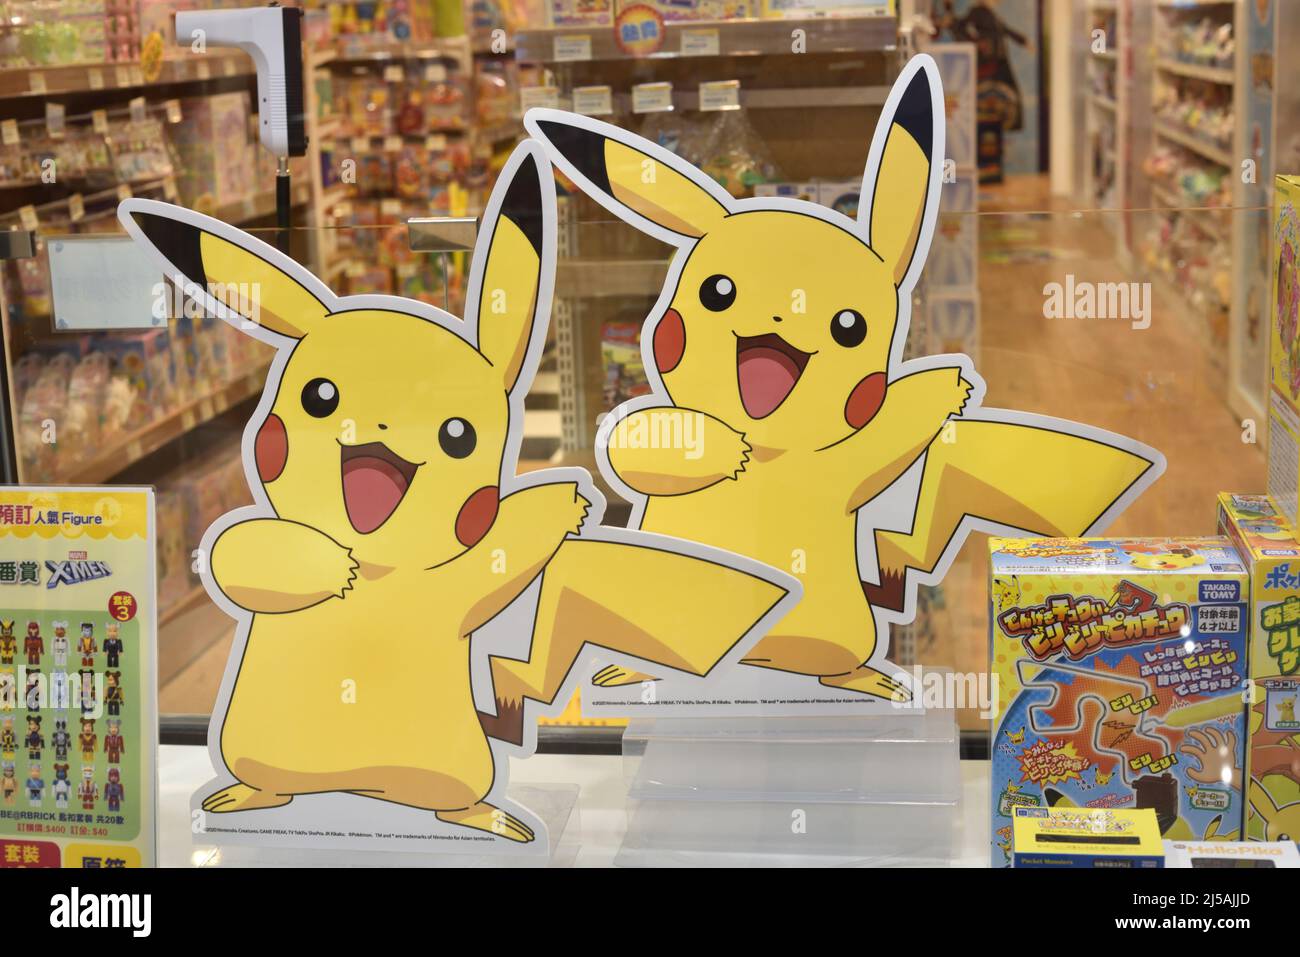 Figuras de cartón de Pikachu gemelo dentro de la ventana de exhibición de una tienda de juguetes Foto de stock